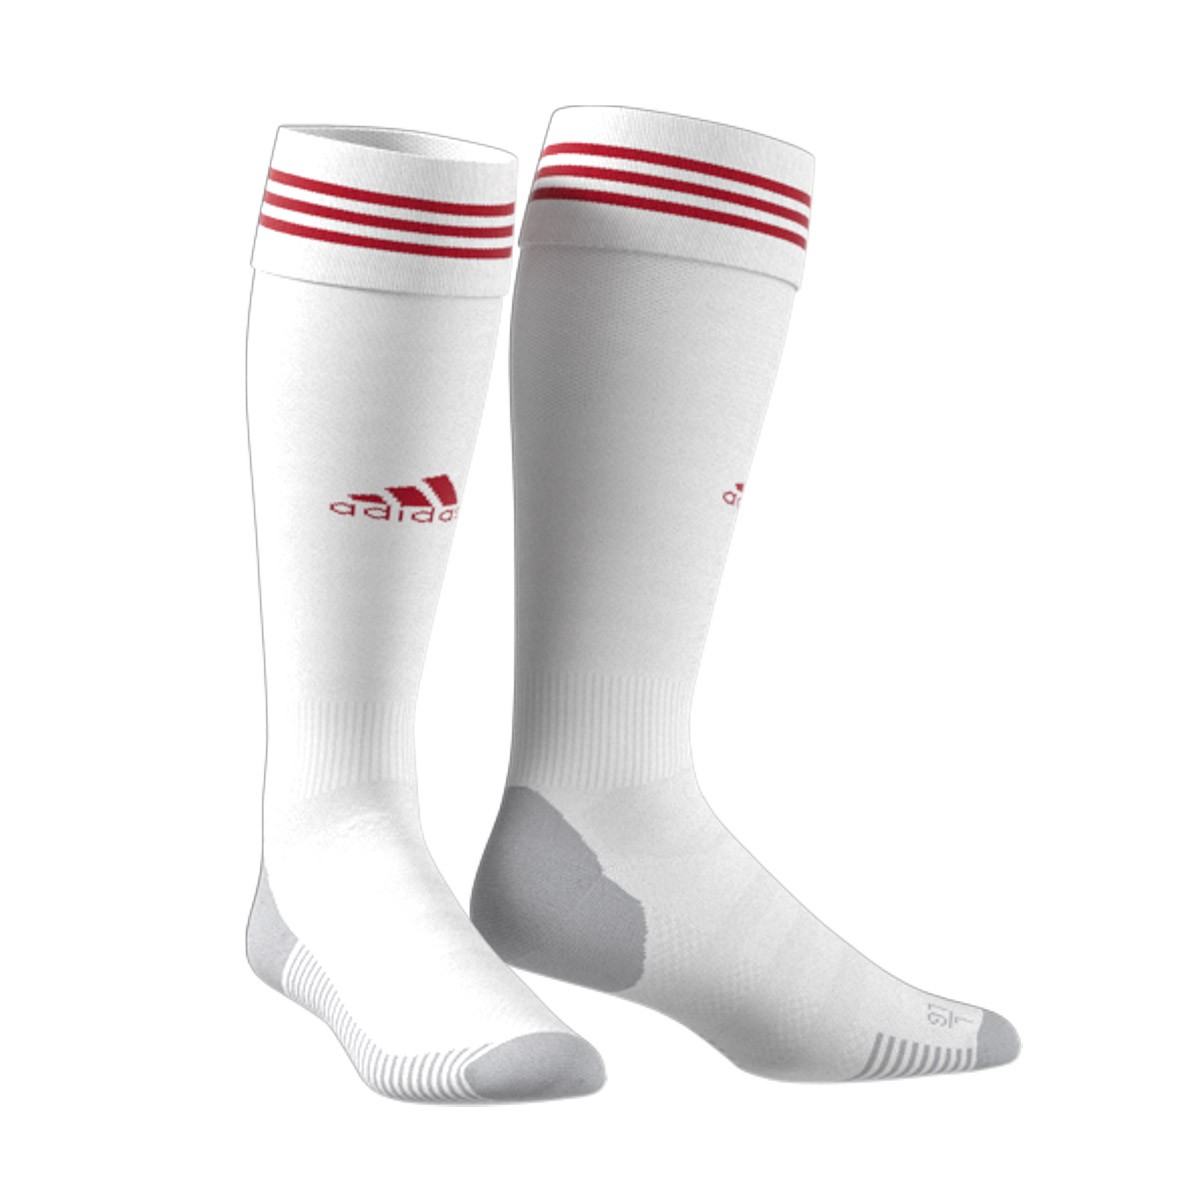 red adidas football socks